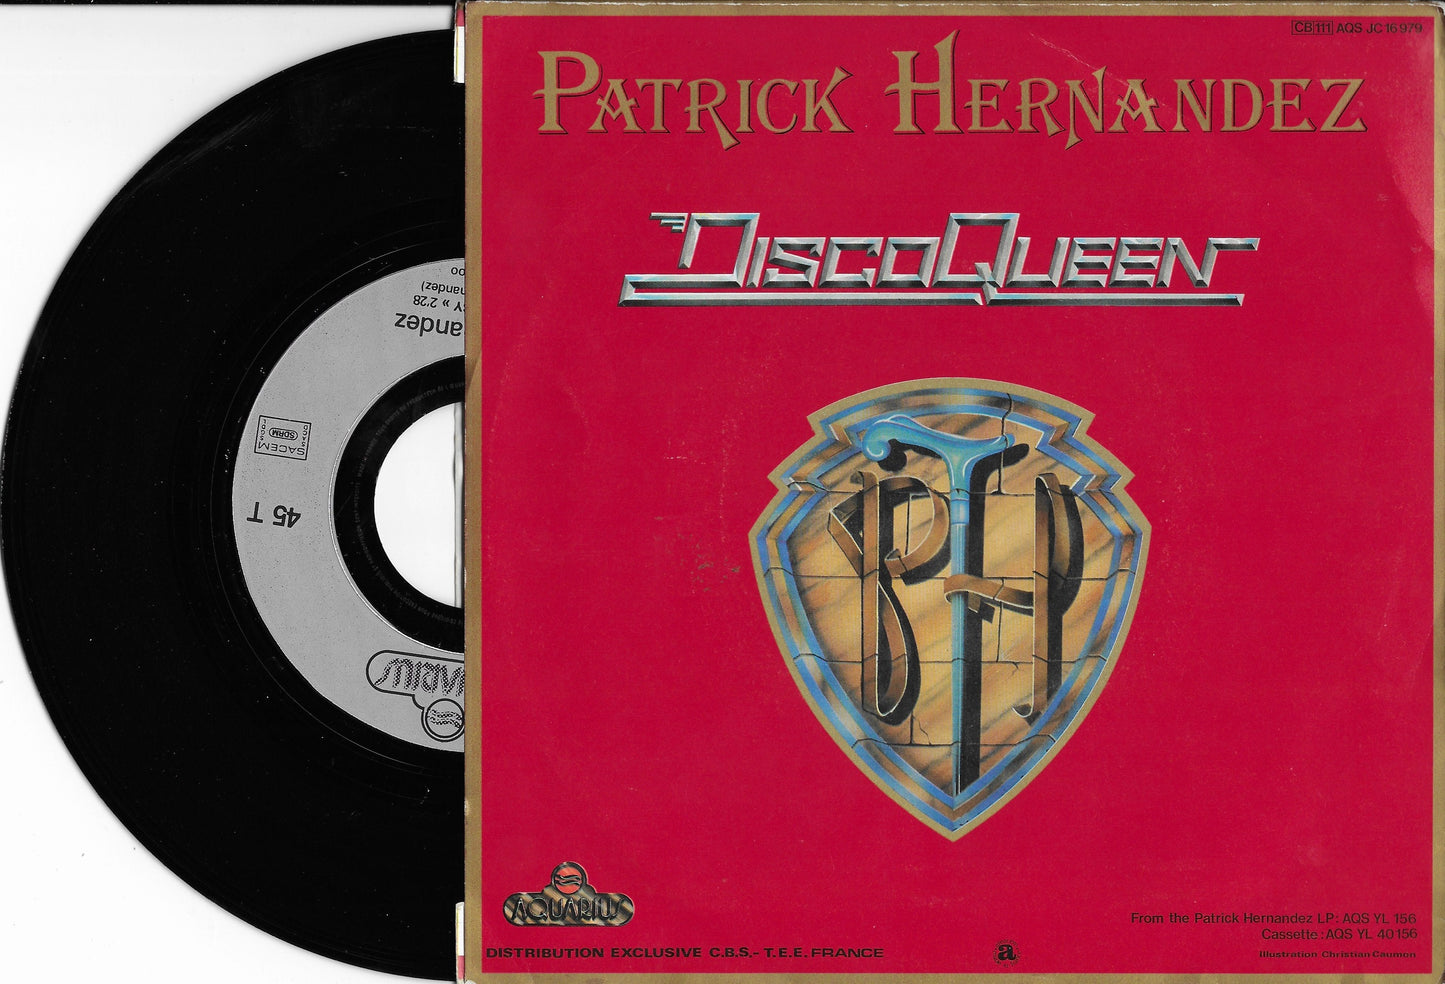 PATRICK HERNANDEZ - Disco Queen